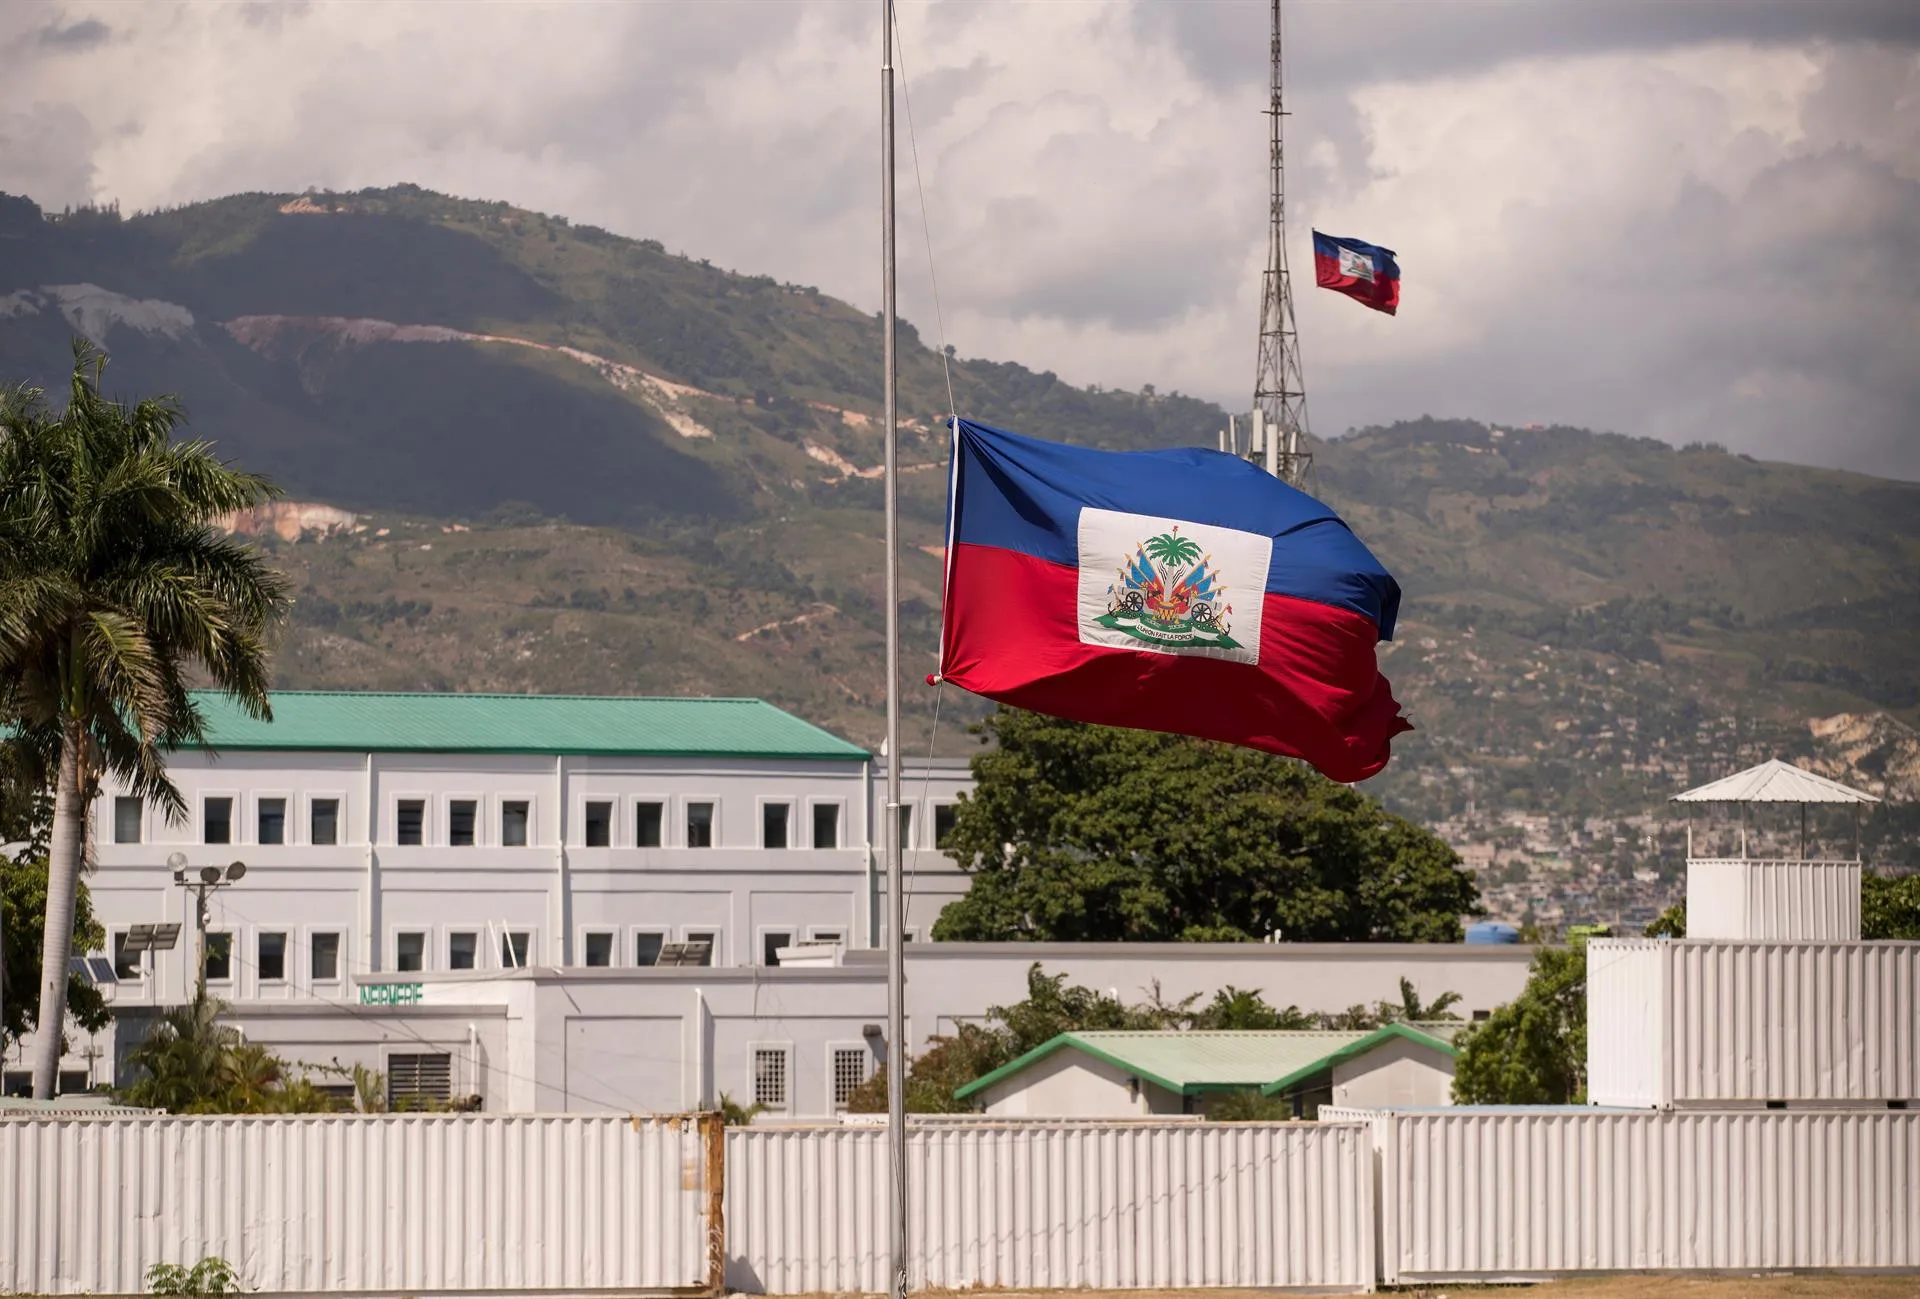 Equipo de la Policía colombiana llega a Haití para investigar el magnicidio